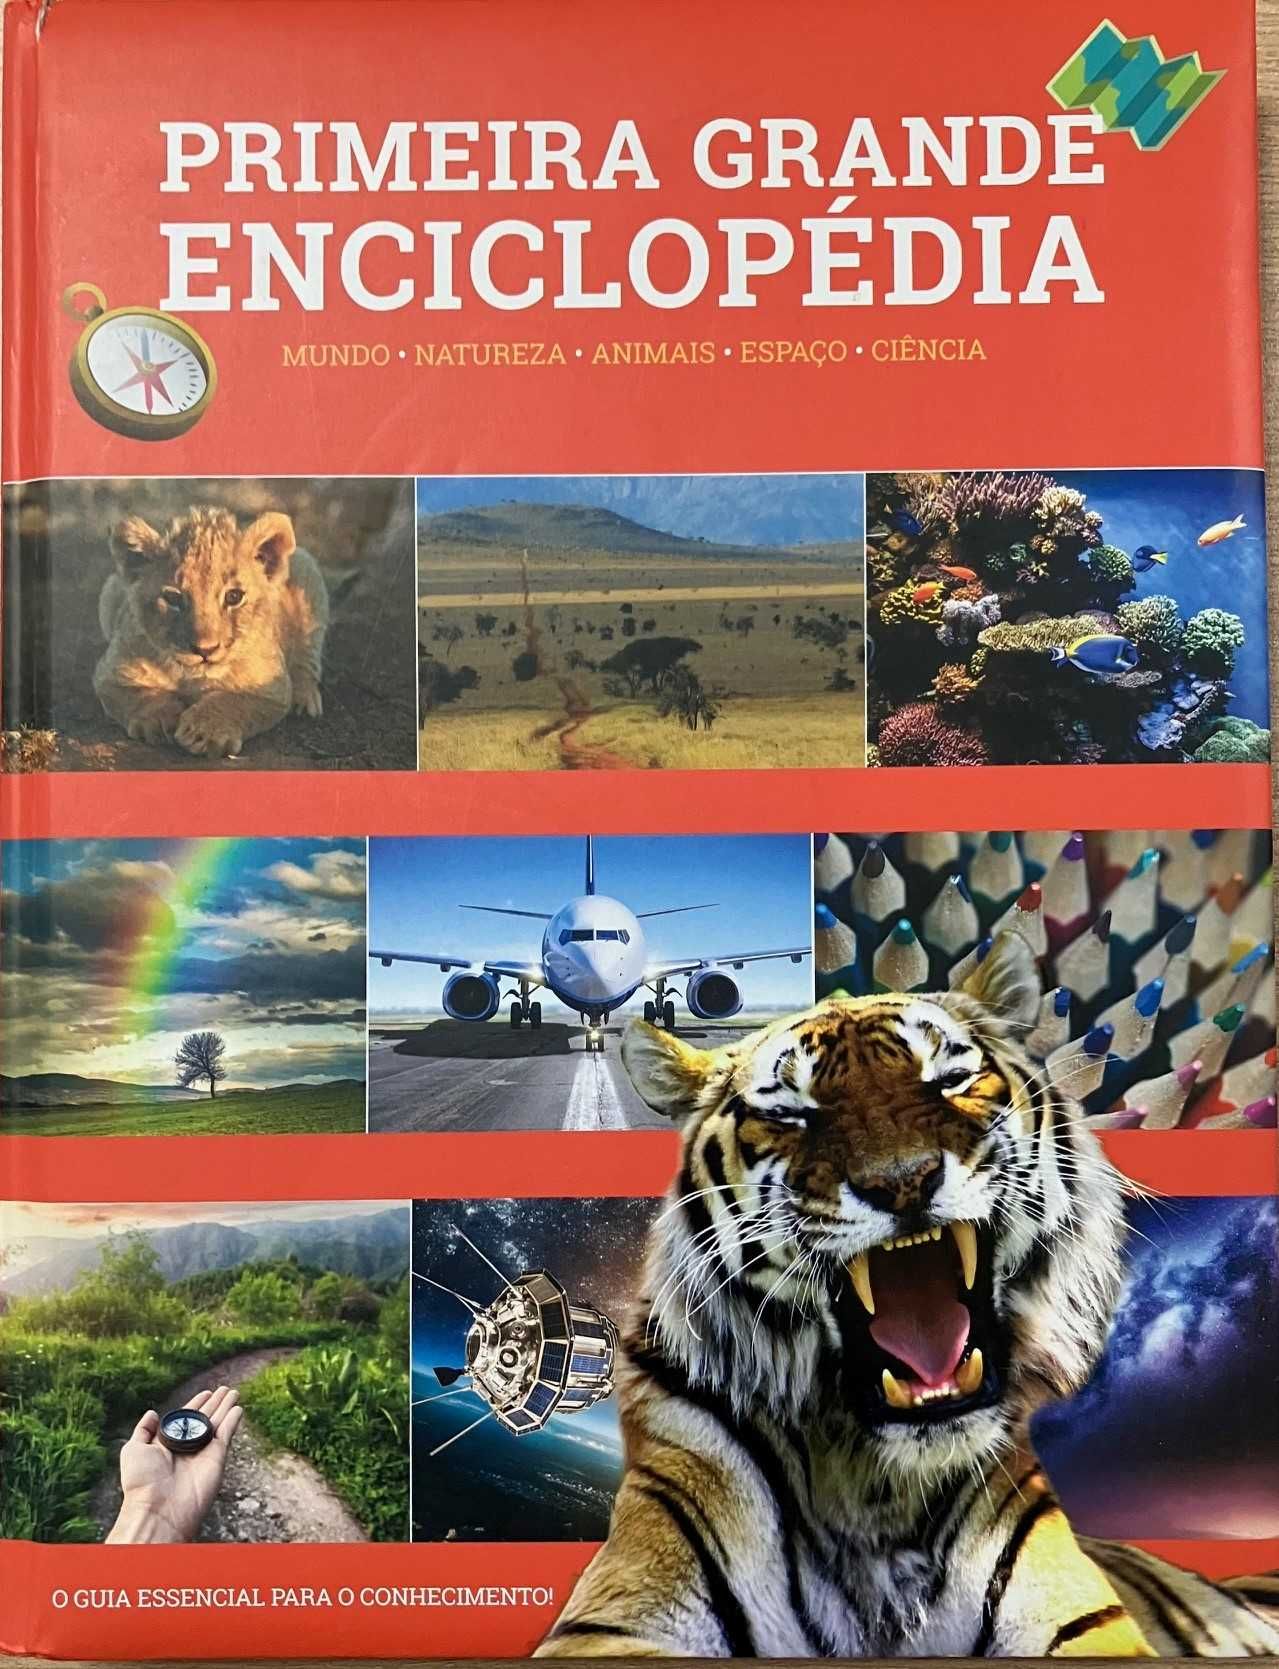 Primeira egrande encoclopedia para cirianças